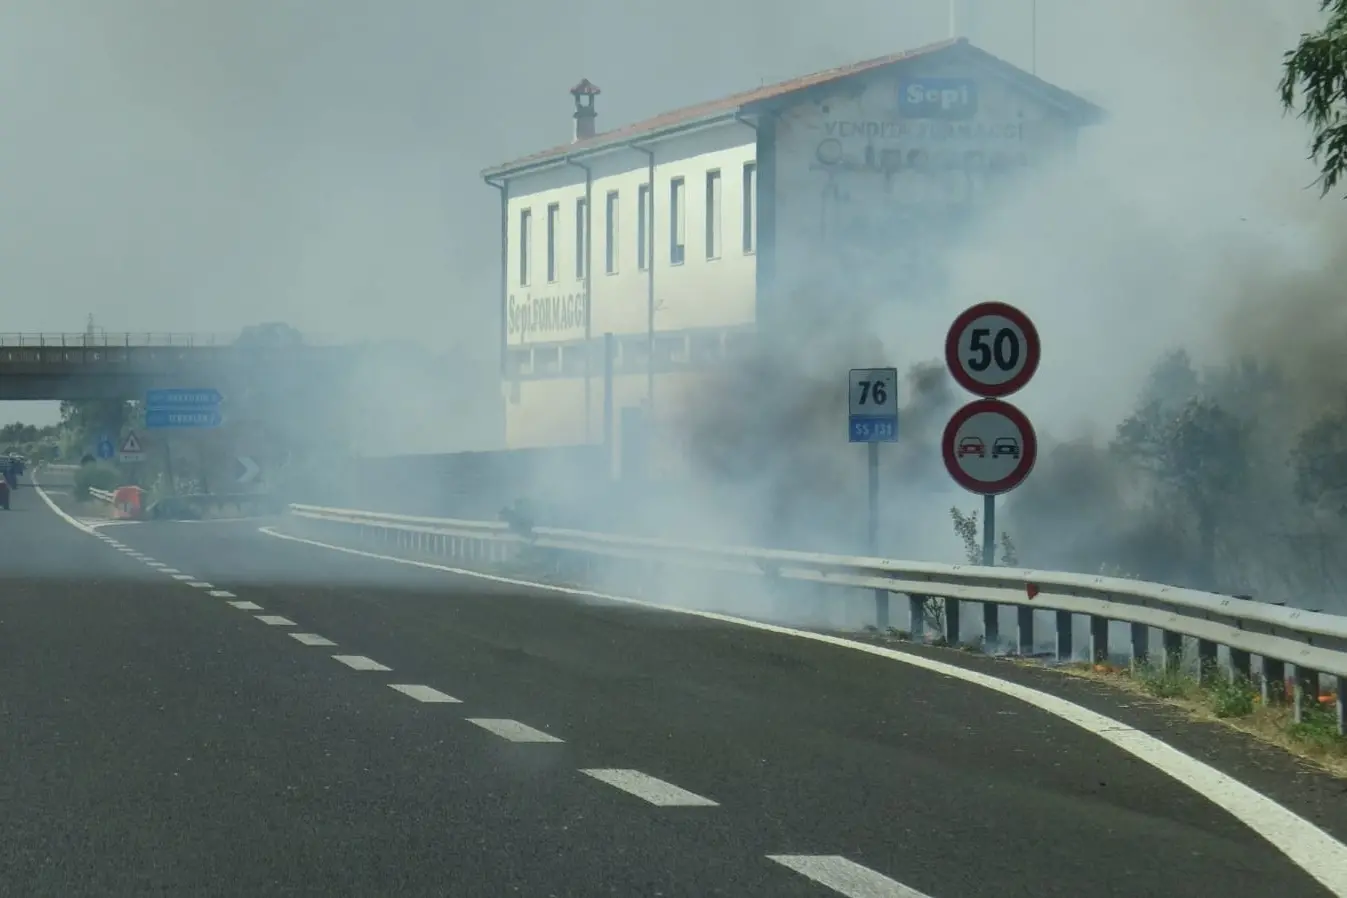 The fire in Marrubiu (photo L'Unione Sarda-Chergia)